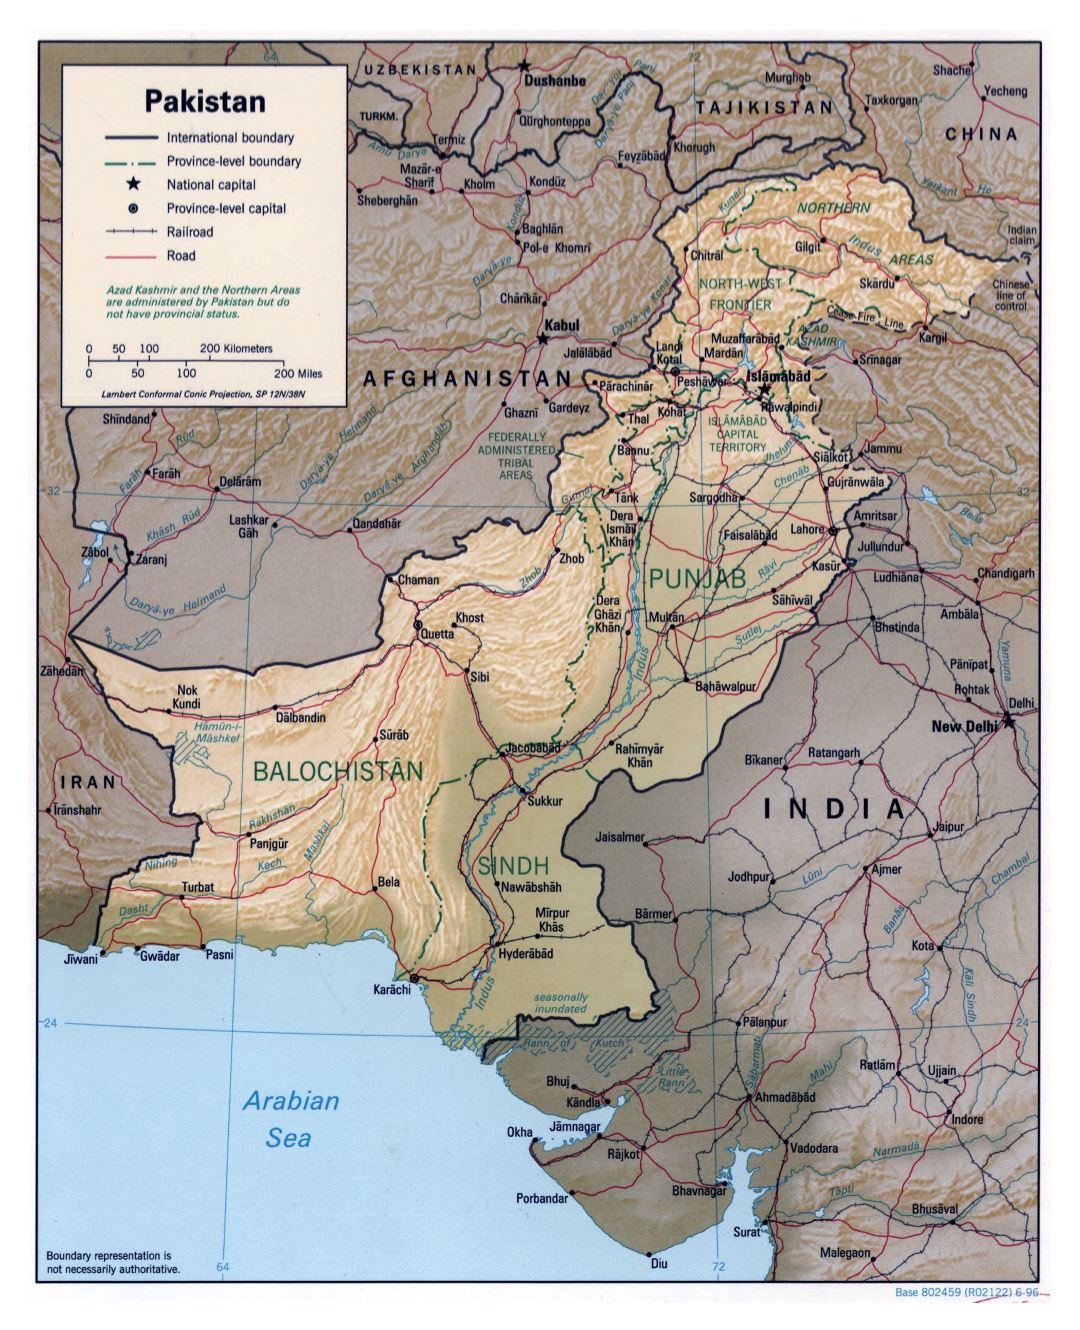 Grande detallado mapa político y administrativo de Pakistán con socorro, carreteras, ferrocarriles y principales ciudades - 1996